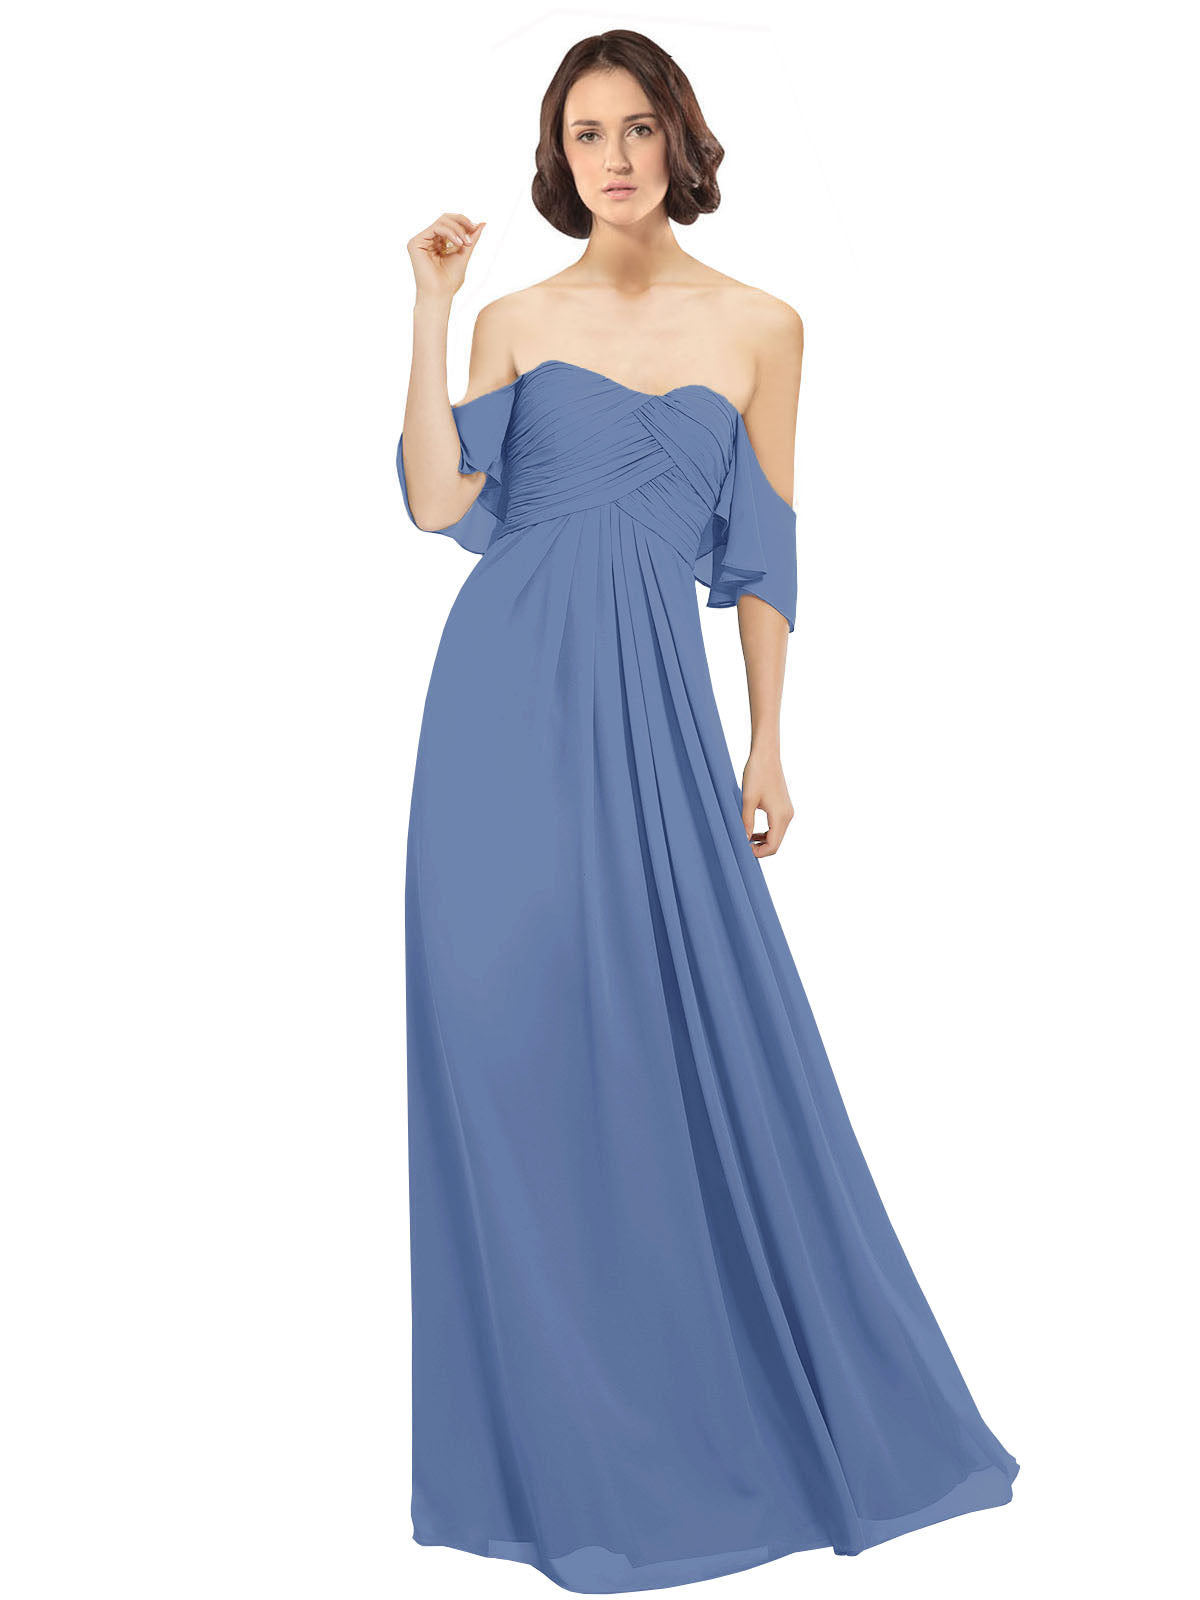 Windsor Blue A-Line Off the Shoulder Off the Shoulder Long Bridesmaid Dress Katherine